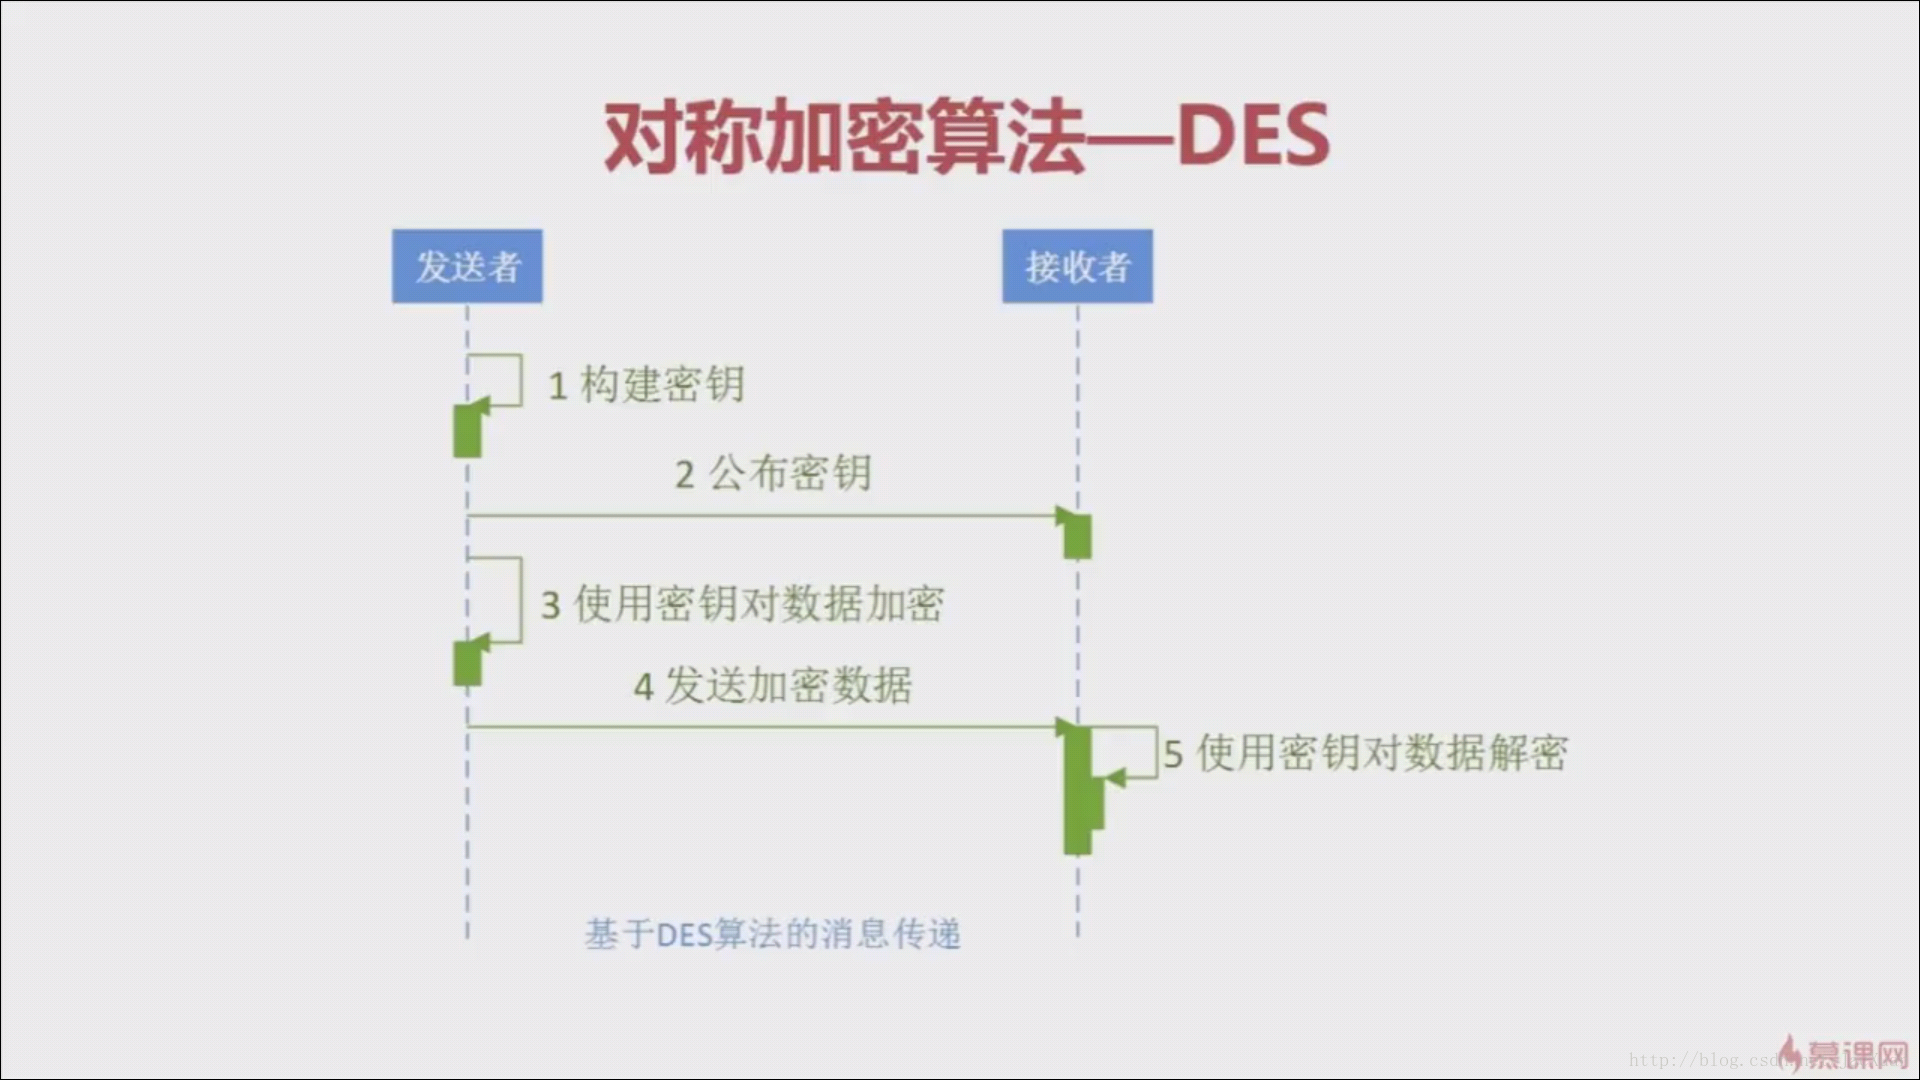 DES加密算法运作流程